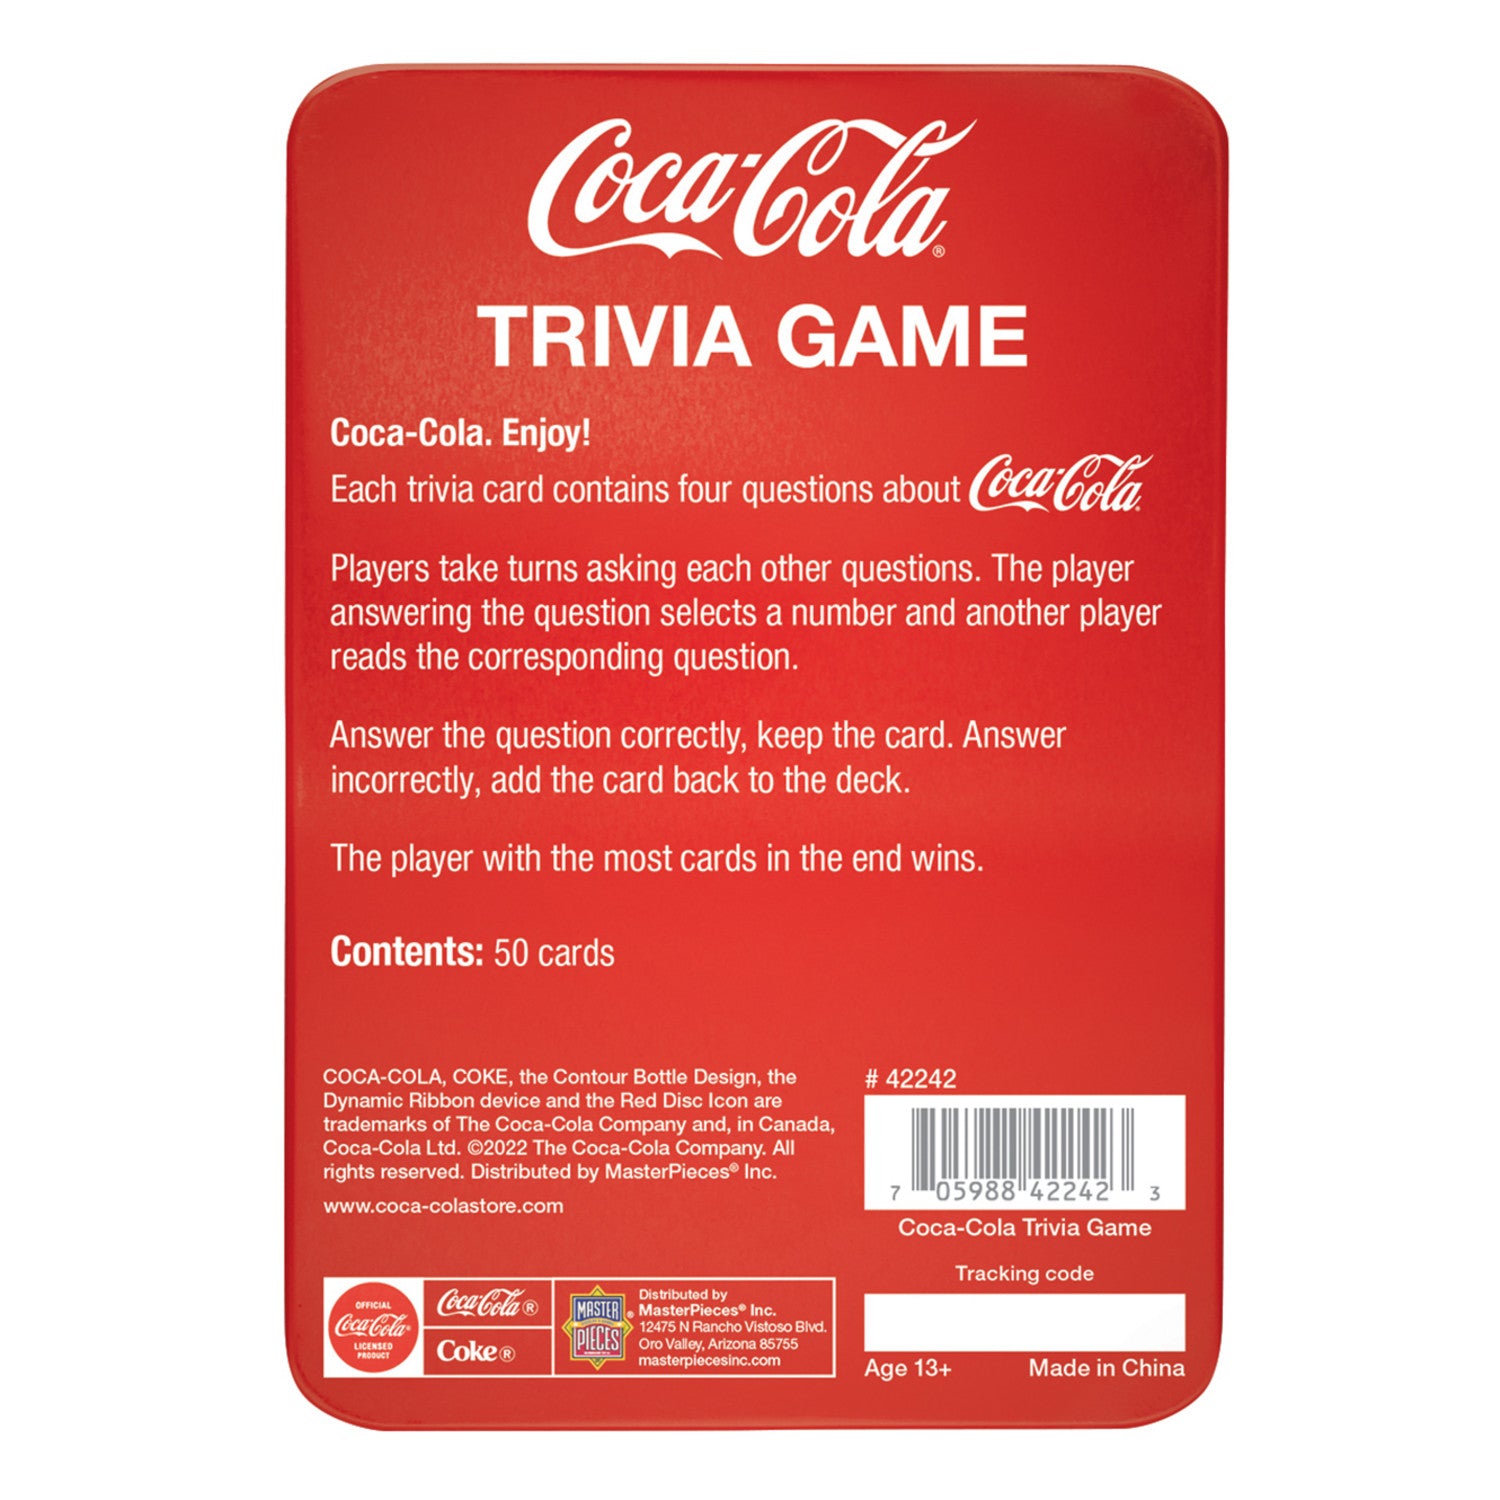 Coca-Cola Trivia Game with Collectible Tin